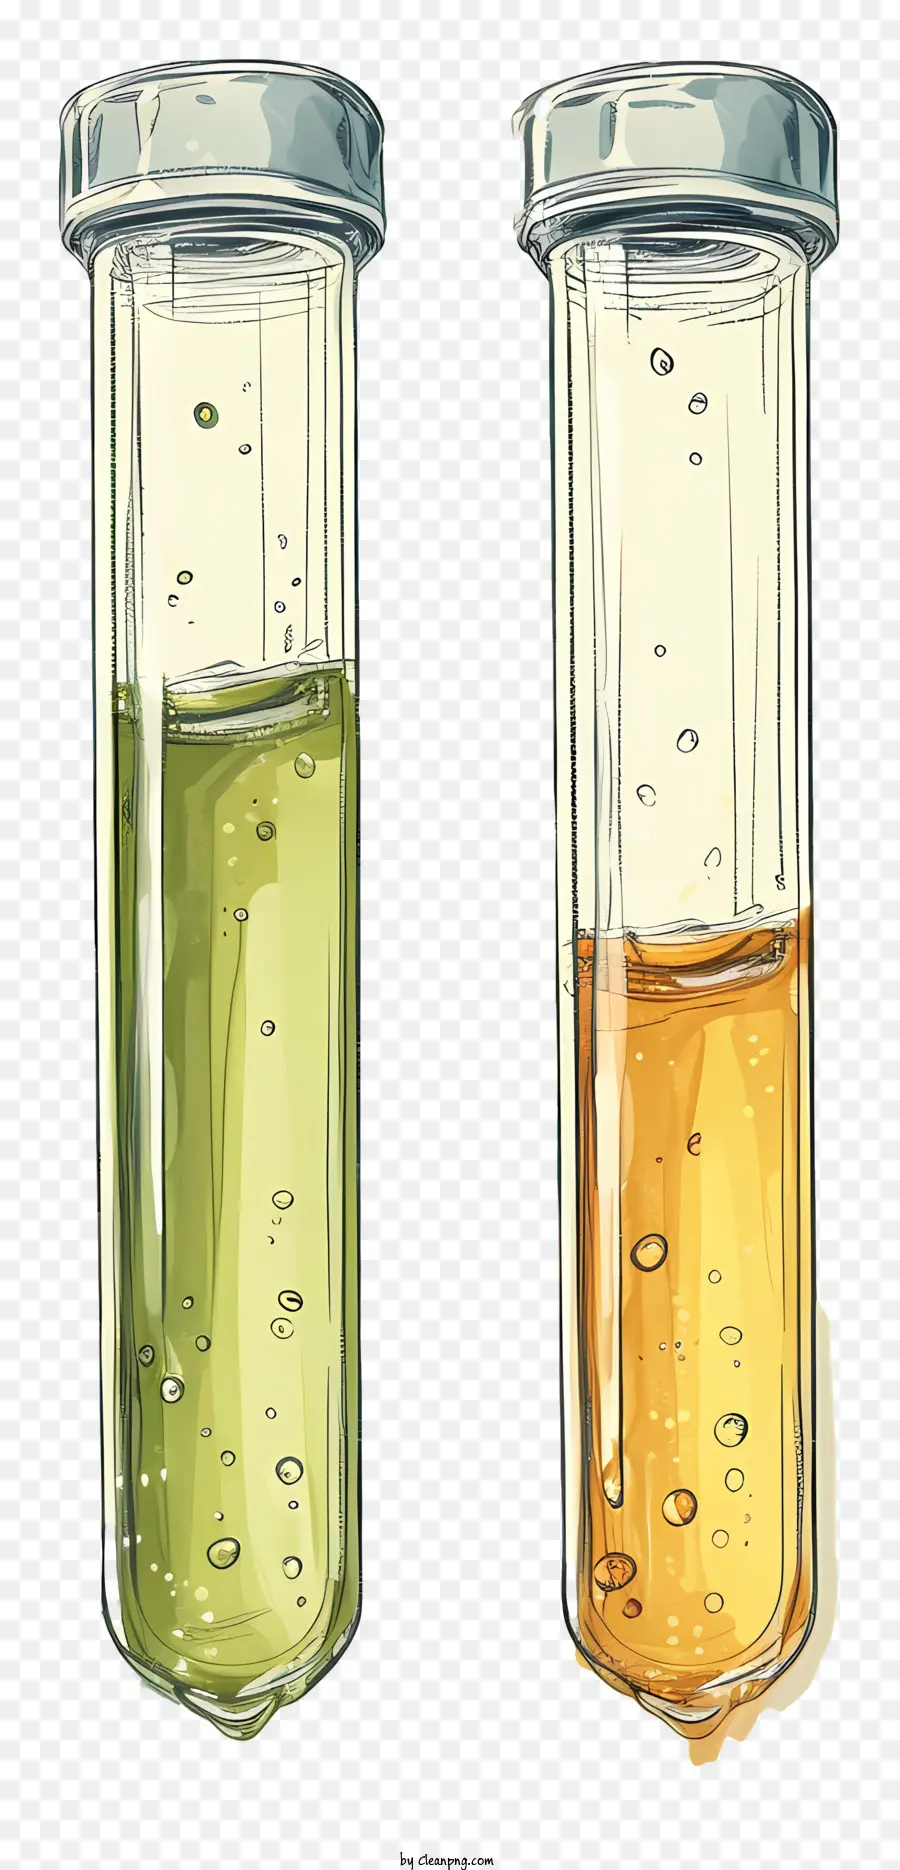 Testrohre Glasbecher gelbe flüssige grüne flüssige Laborumgebung - Zwei Becher mit gelben und grünen Flüssigkeiten